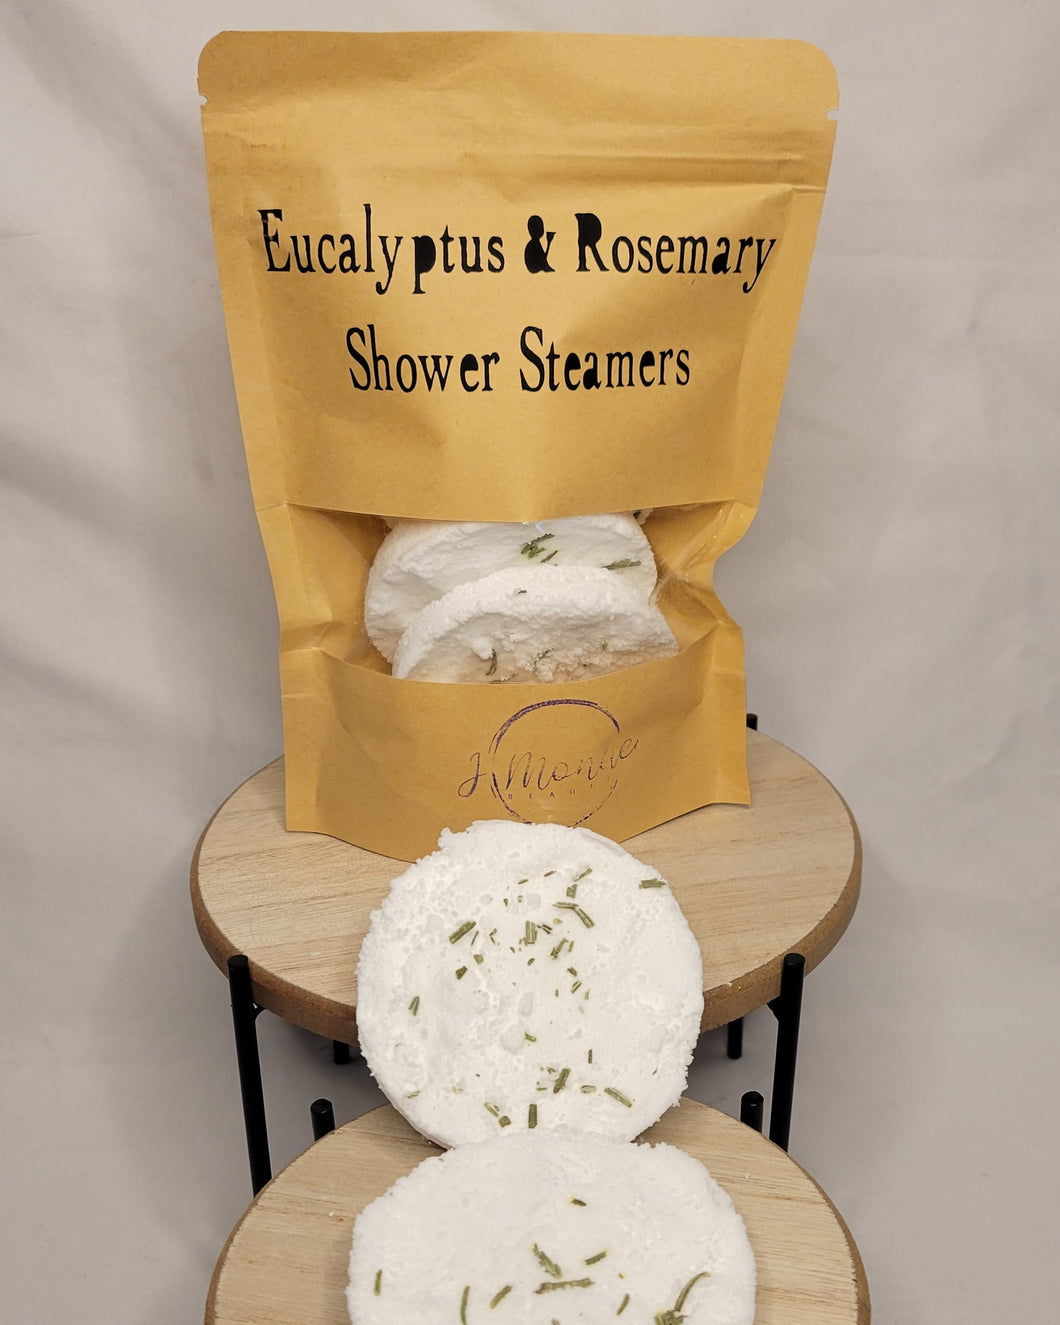 Eucalyptus & Rosemary Shower Steamers